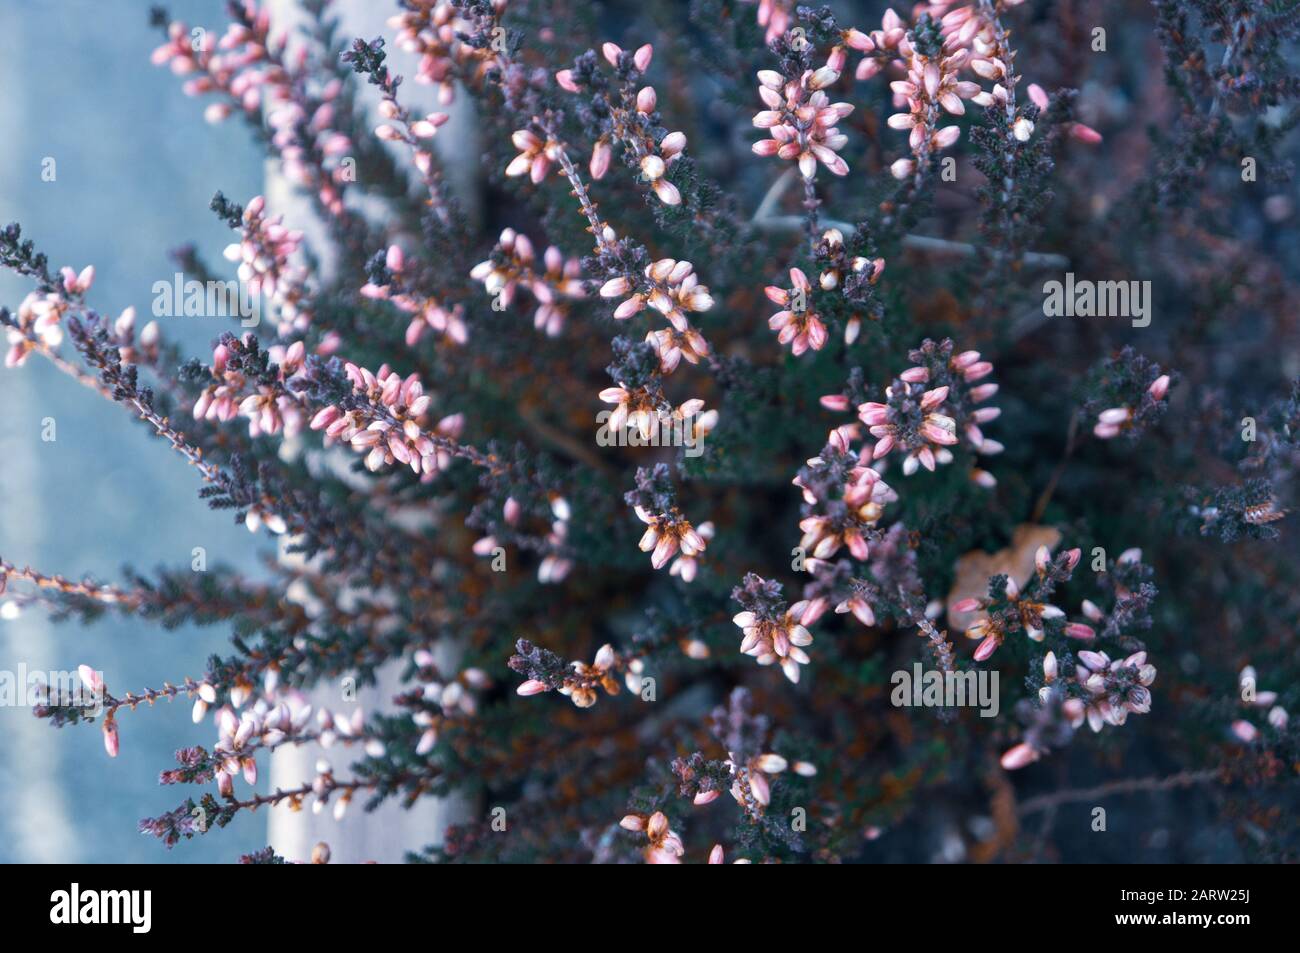 Coold tönte Nahaufnahme von kleinen rosafarbenen Blumenknospen, die ungleichmäßig auf dunklen stacheligen Ästen zum Licht wachsen. Von oben bei Tageslicht von der linken Seite aus aufgenommen Stockfoto